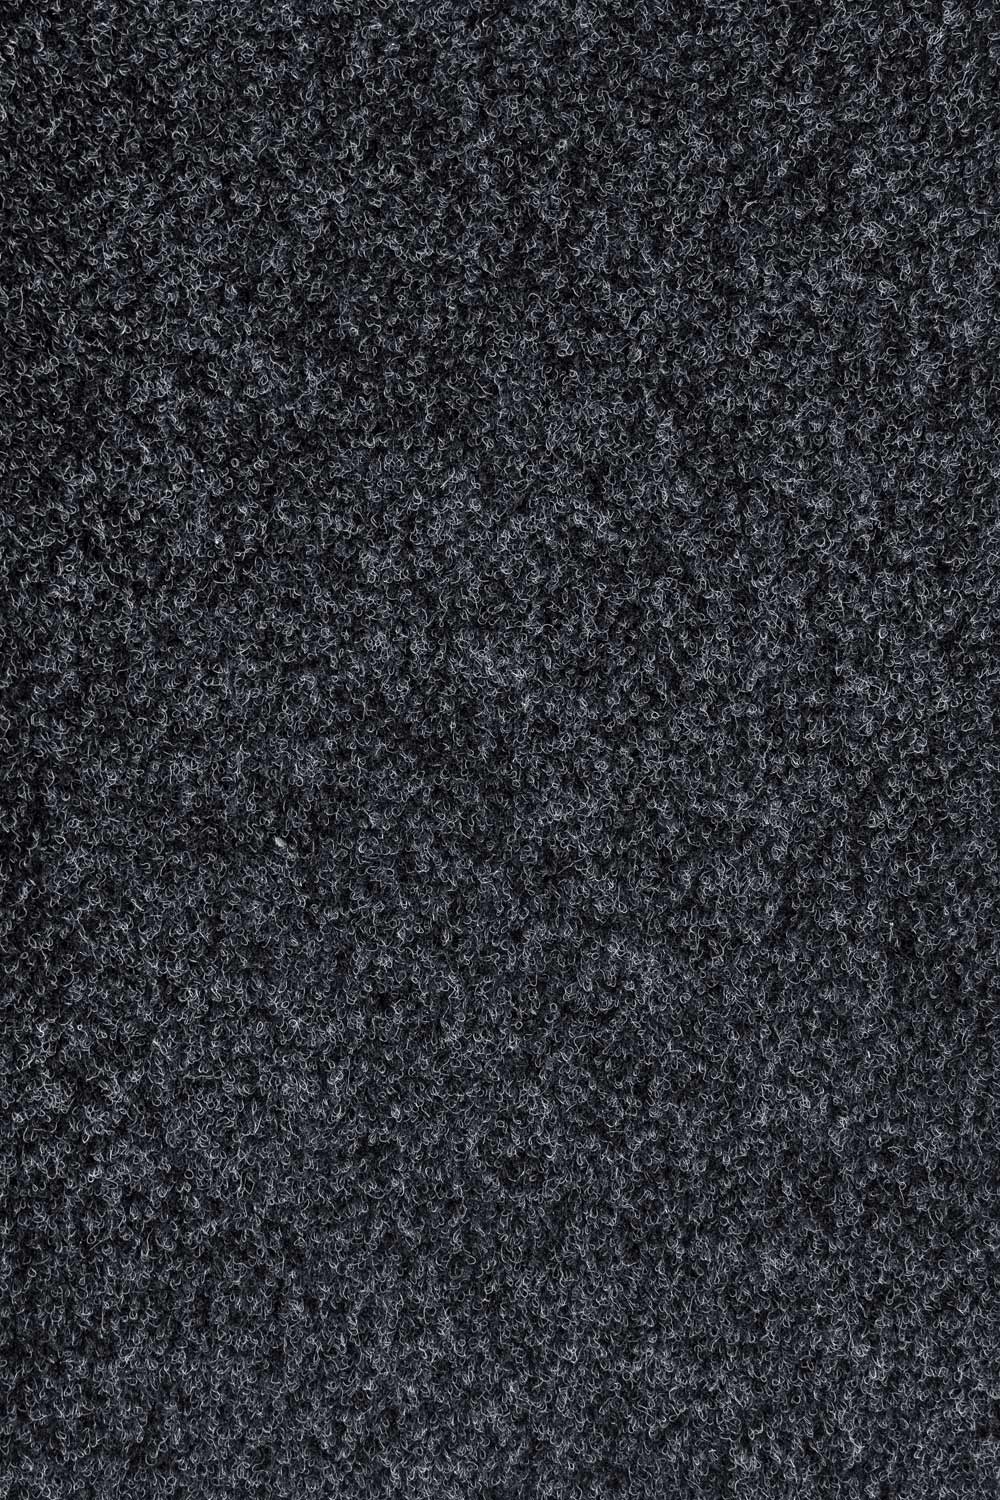 Objektový koberec RAMBO 15 400 cm